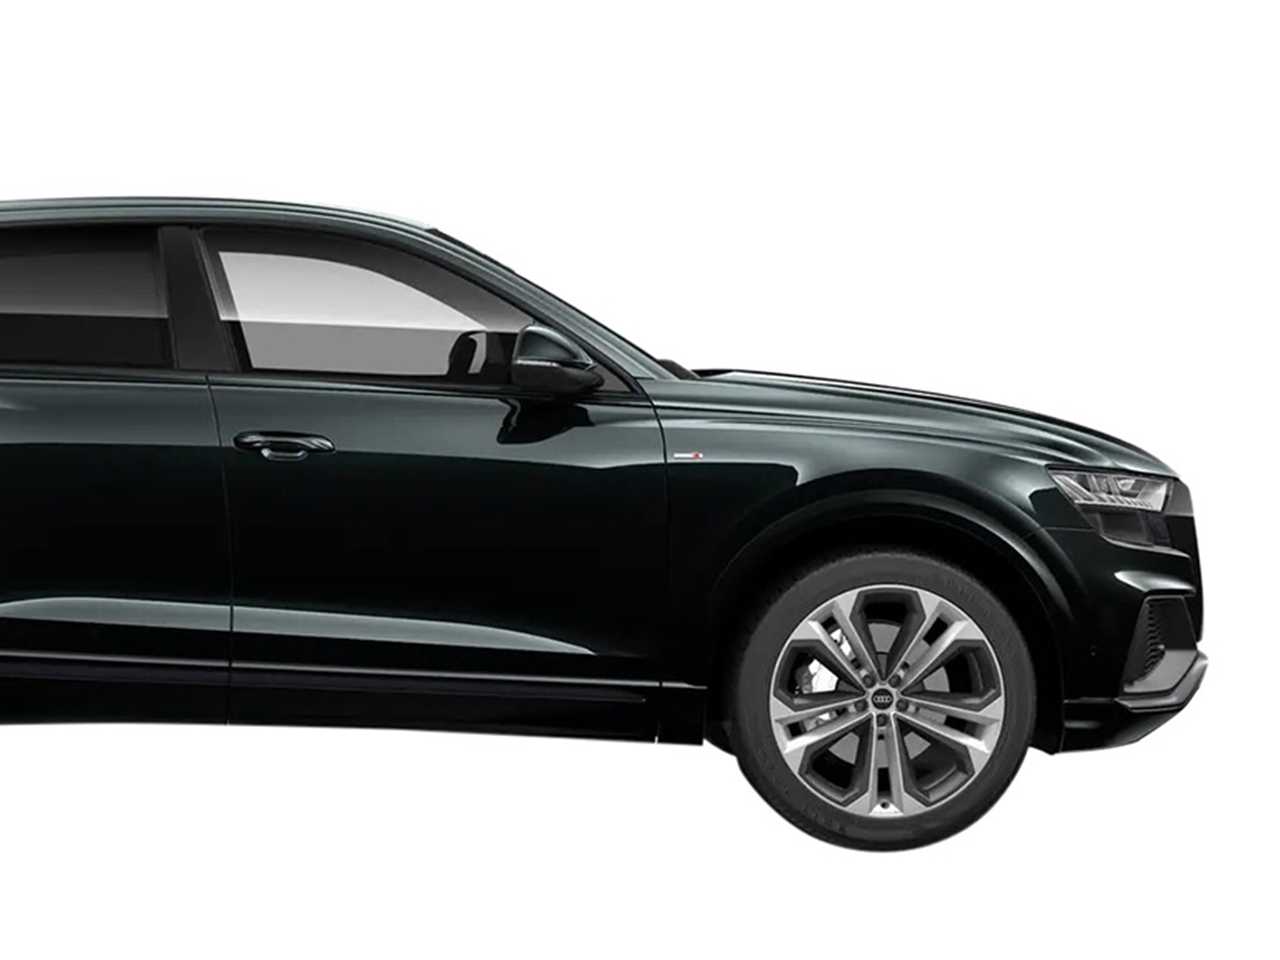 Audi Q8 Side View